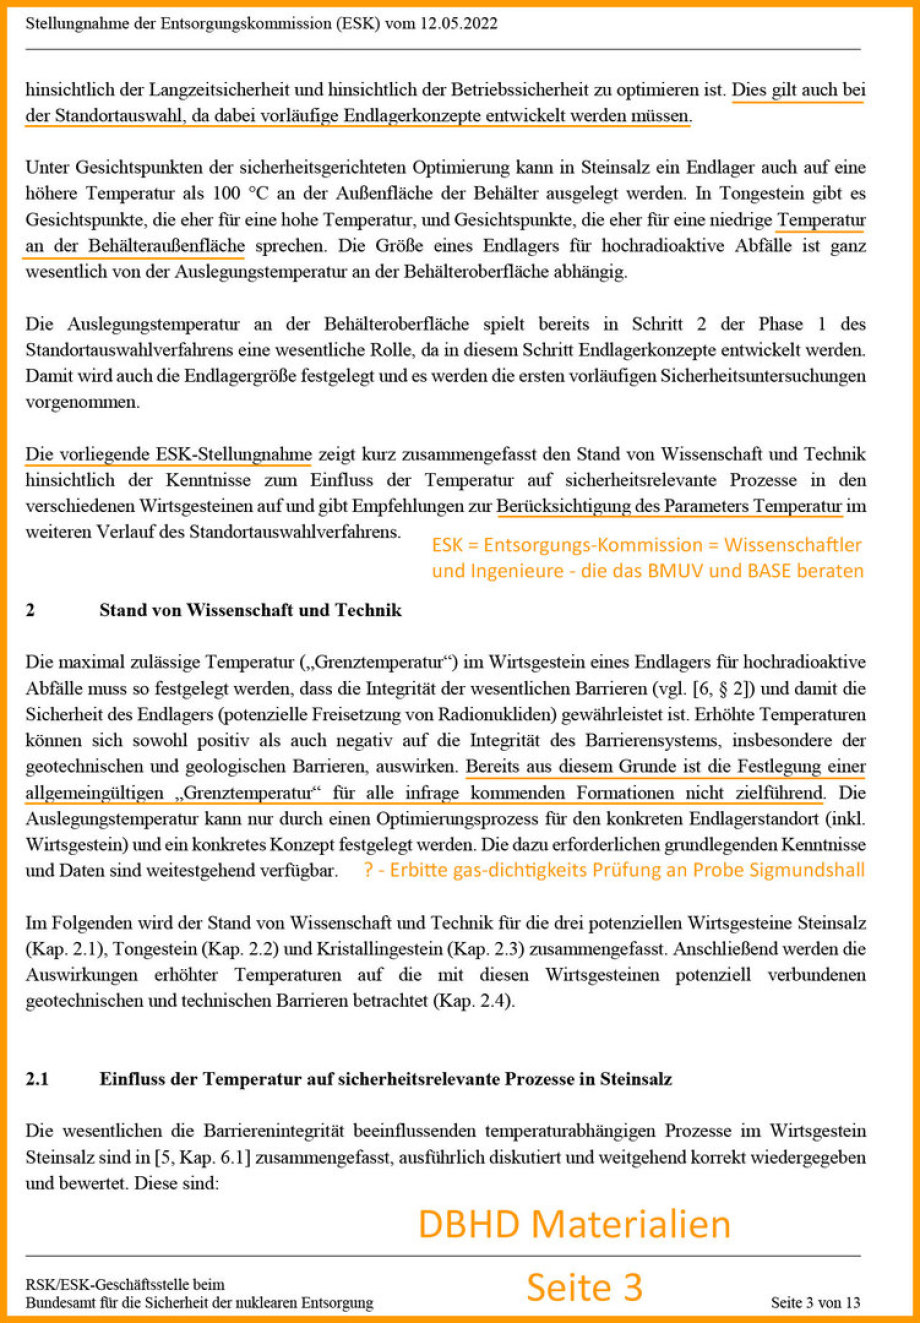 Excerpt from the ESK Germany statement on temperatures in the repository - Auszug aus der ESK Stellungnahme zu Temperaturen im Endlager